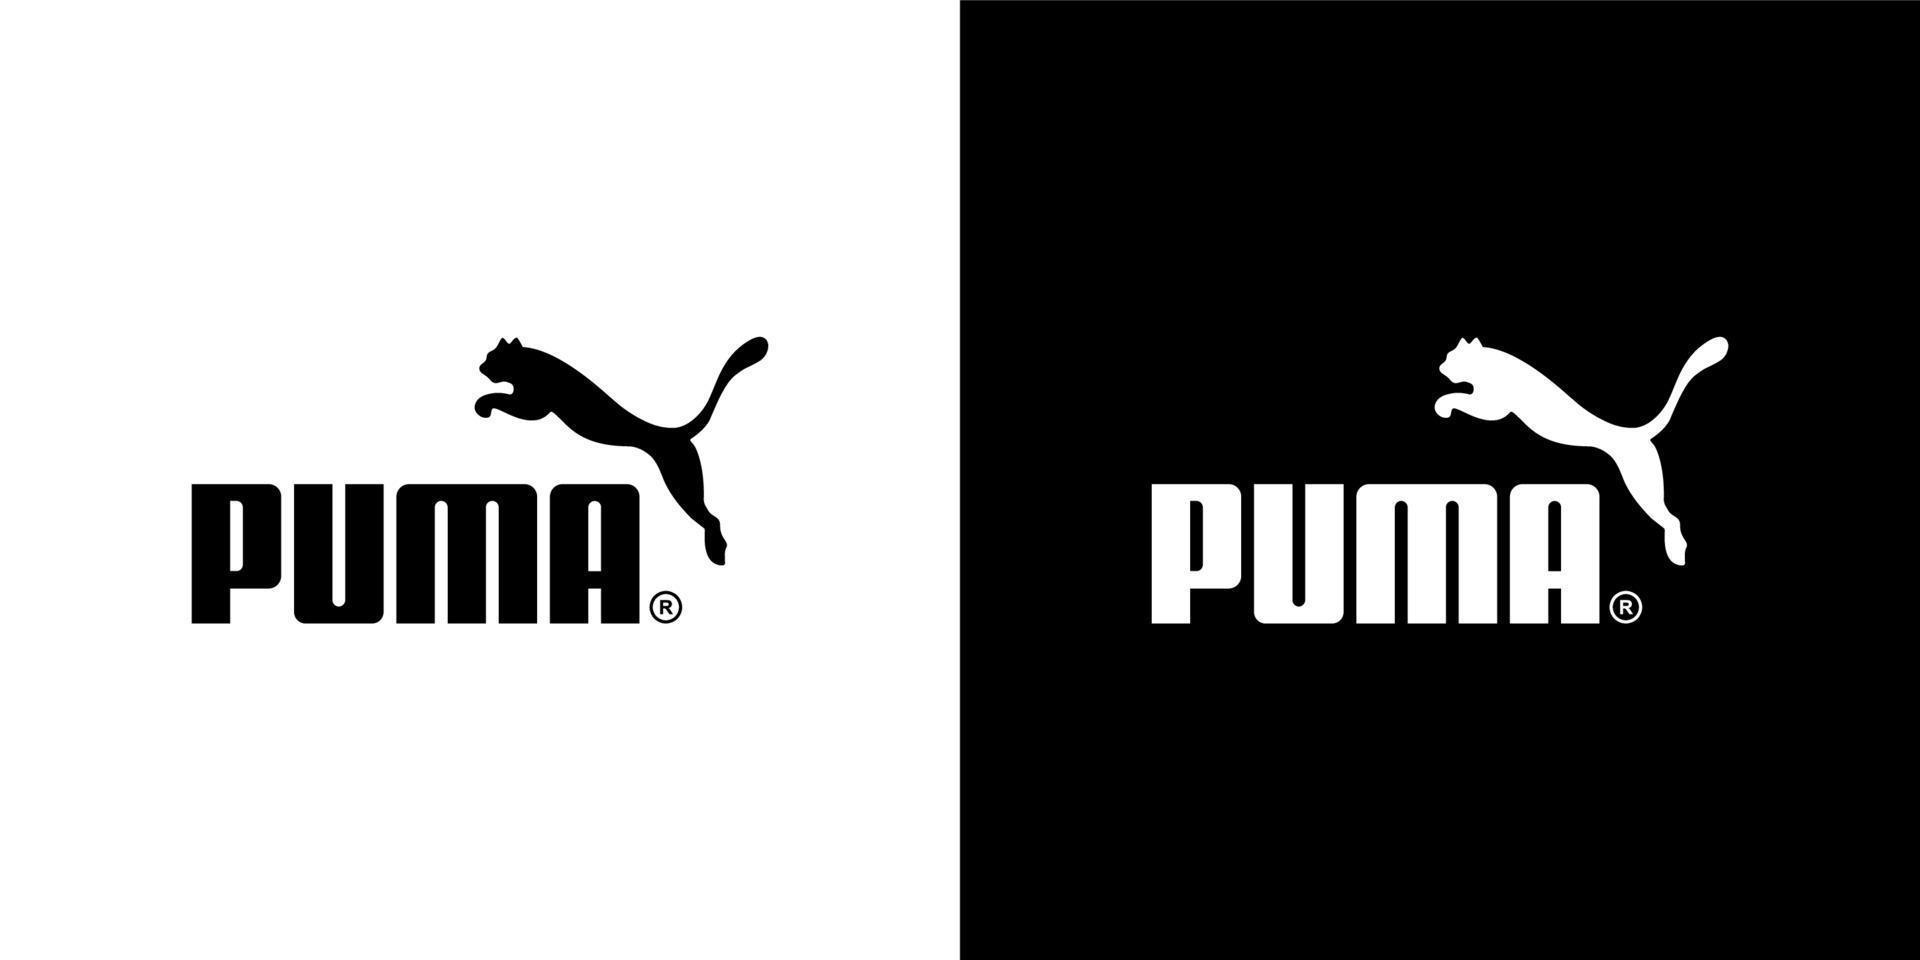 puma logo vecteur, puma icône gratuit vecteur